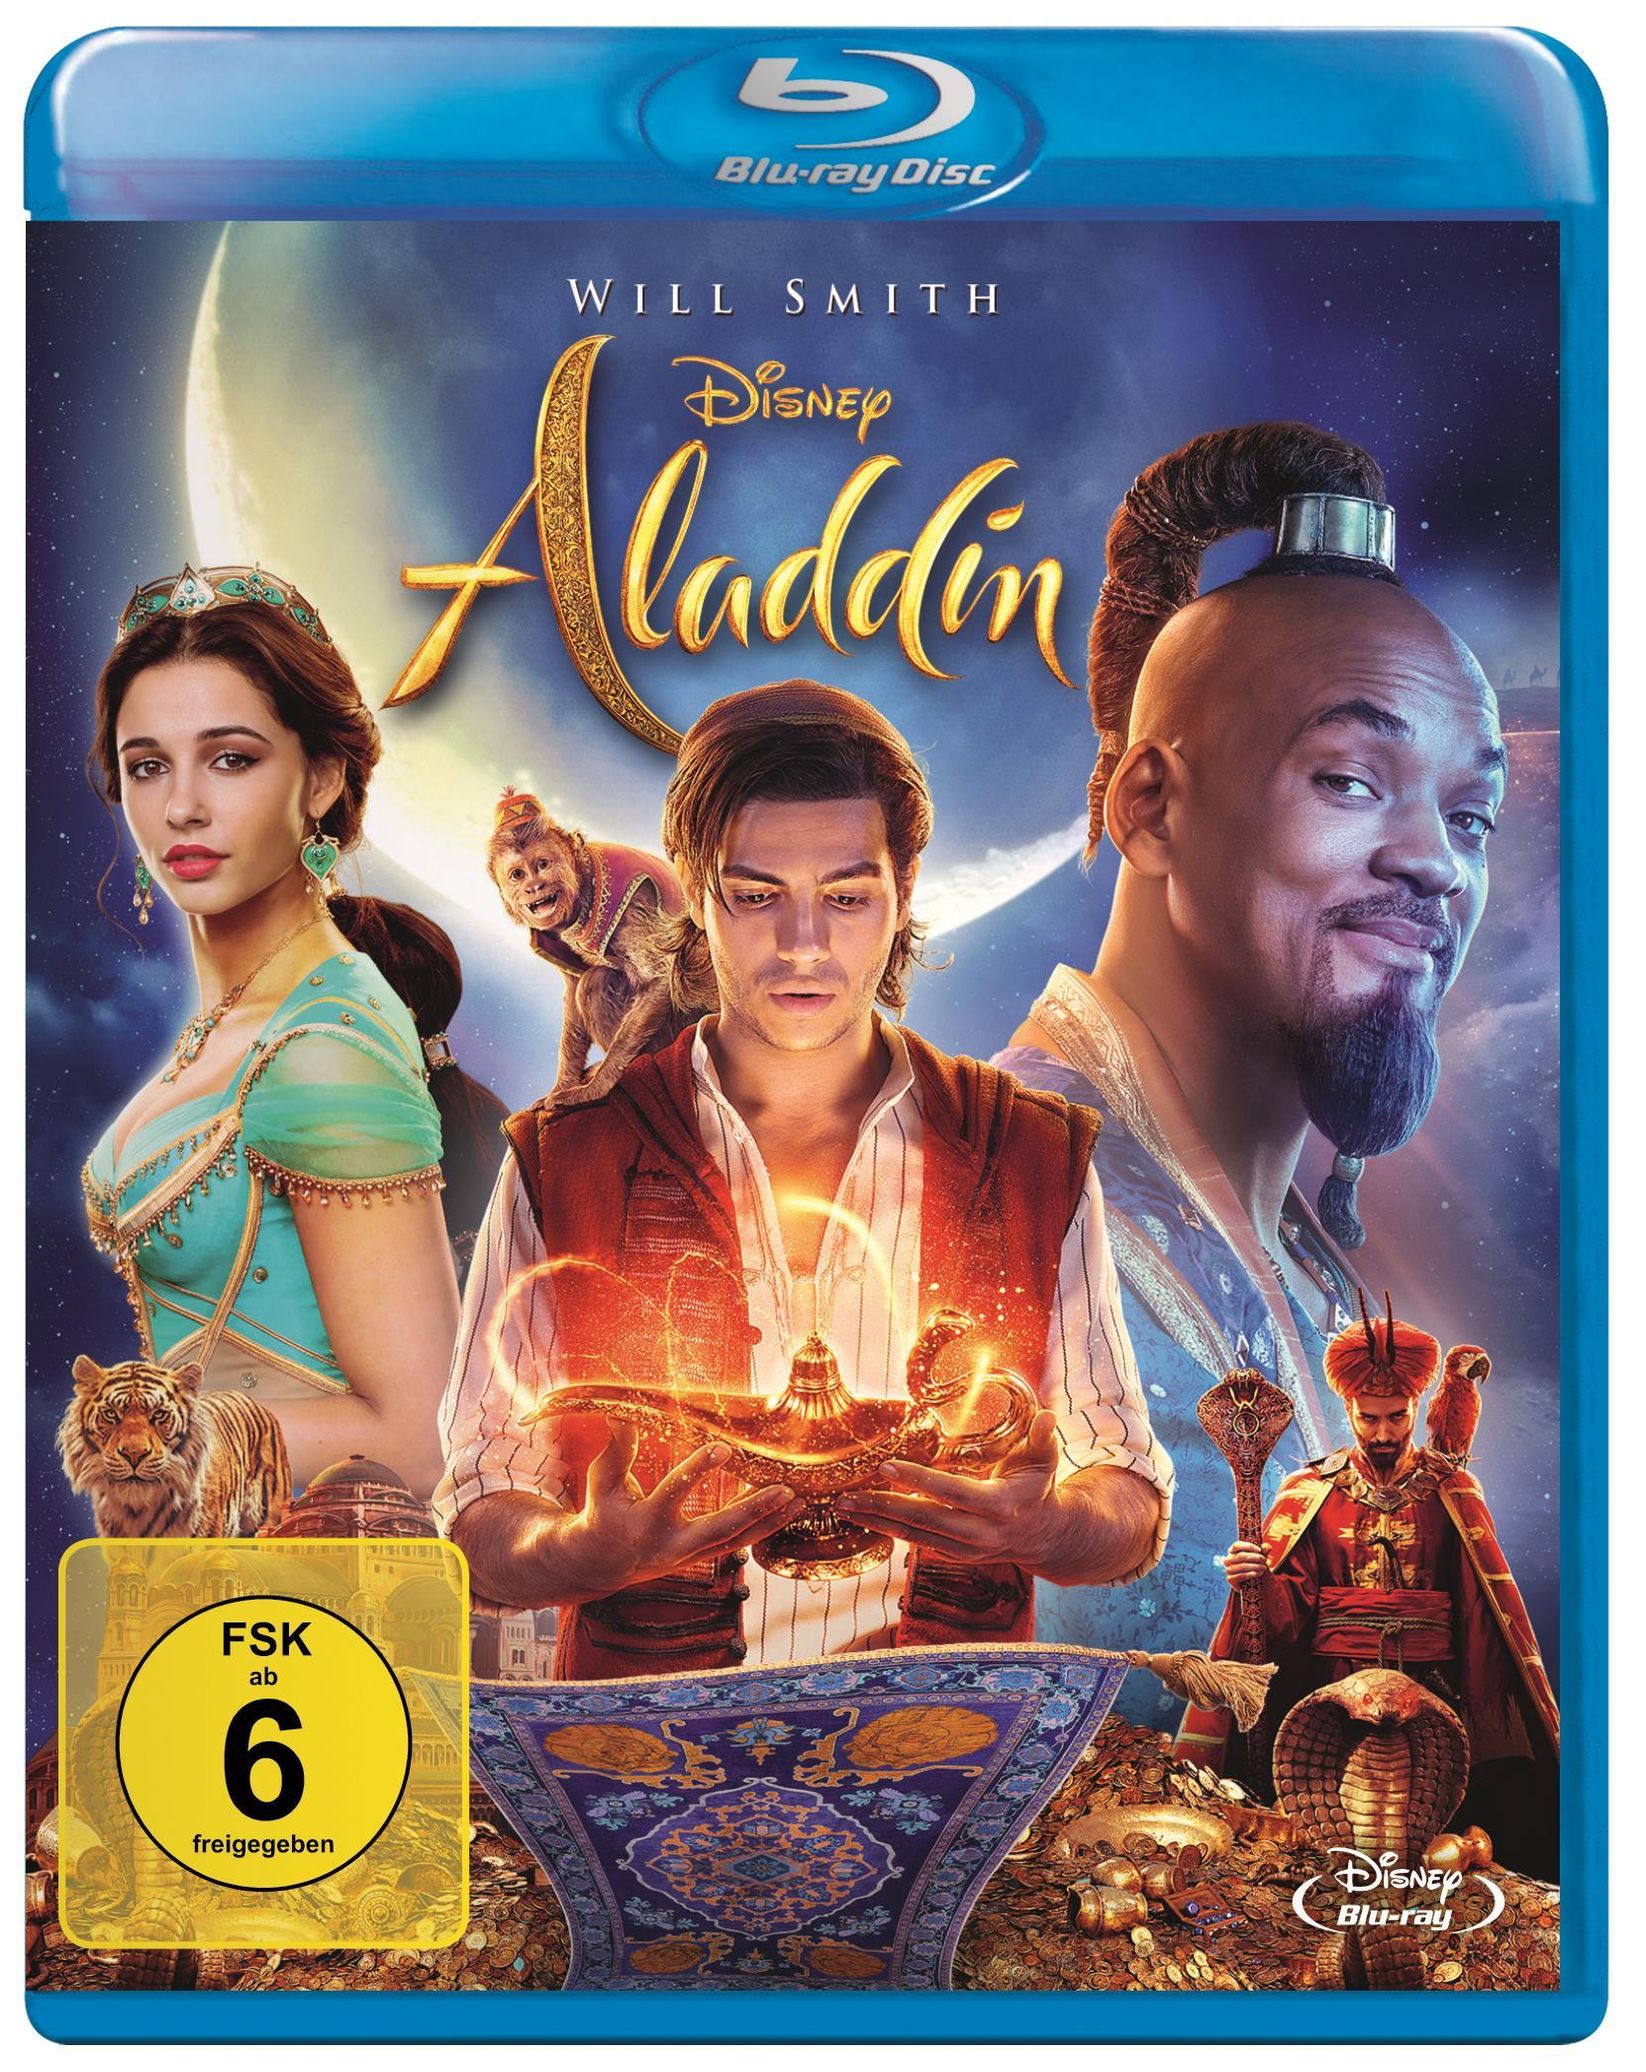 Aladdin 2019 Blu-ray jetzt im Weltbild.ch Shop bestellen